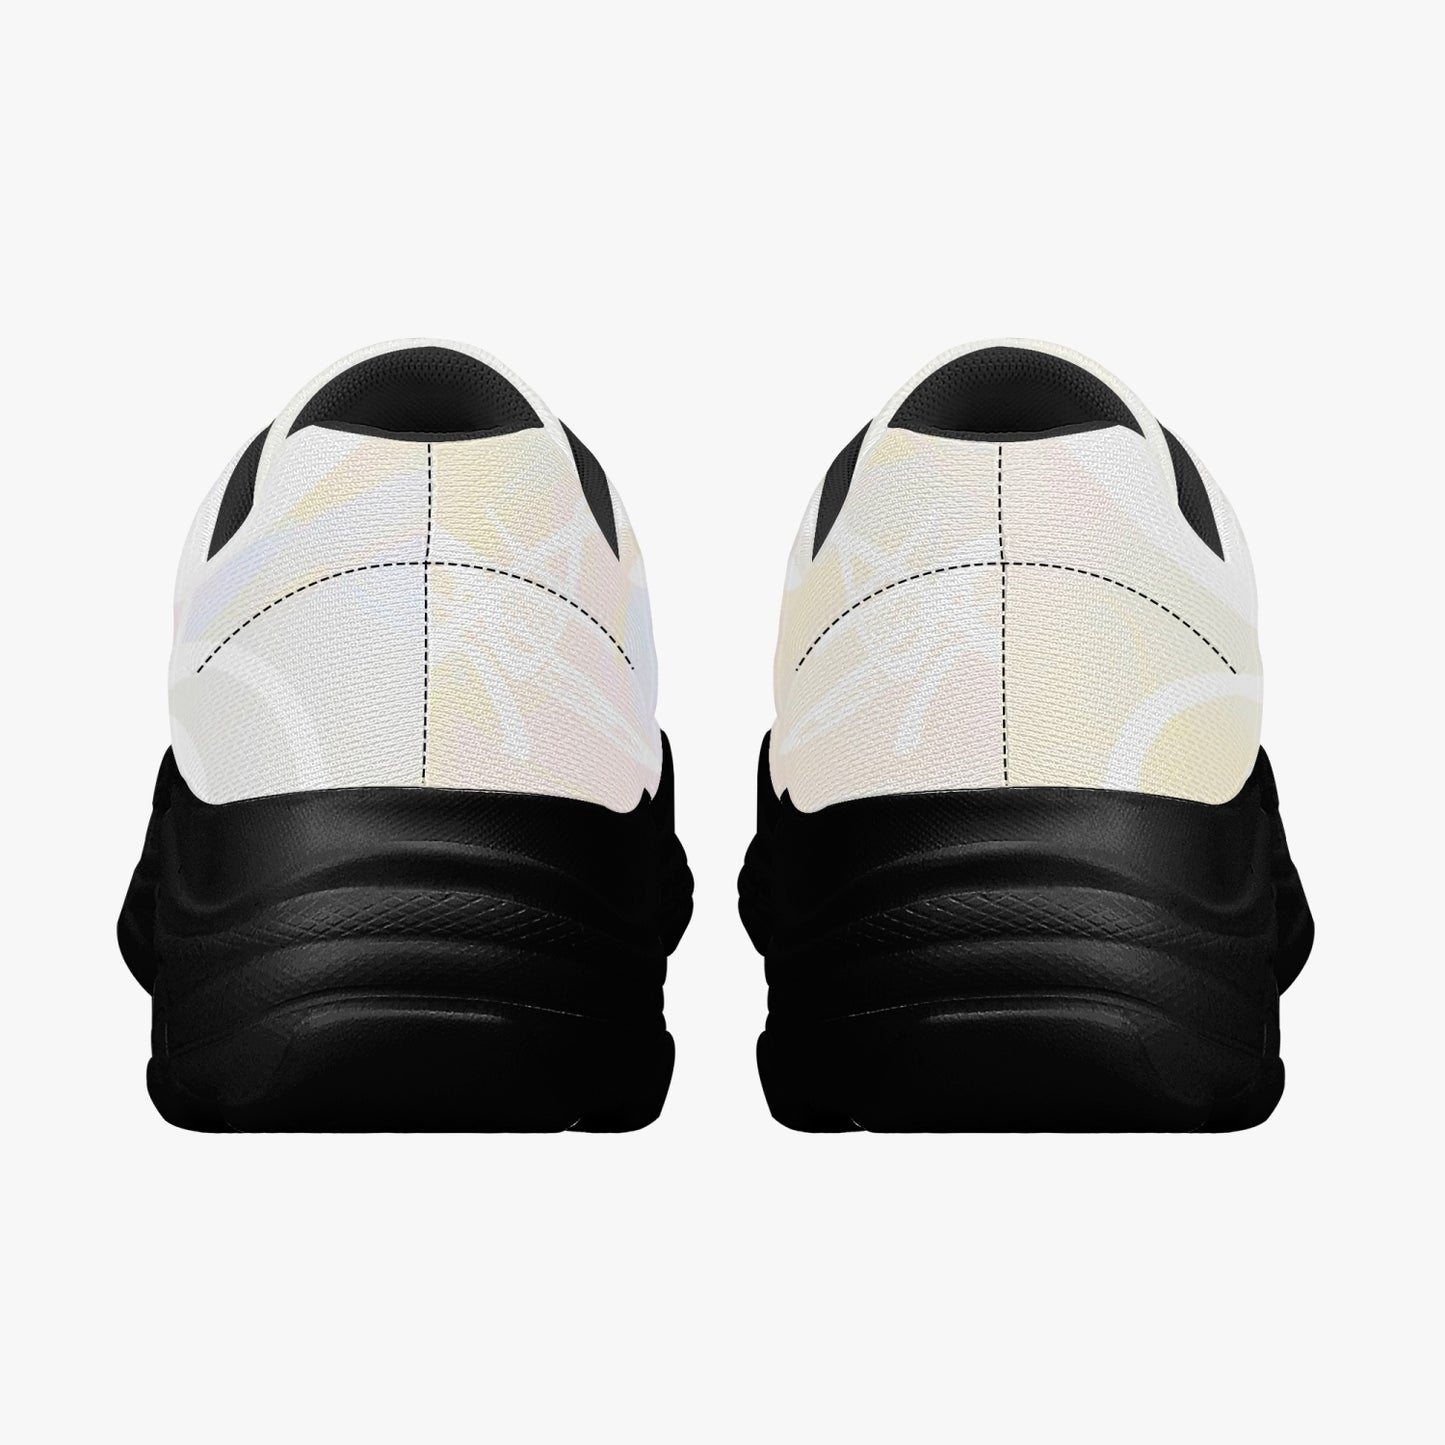 Zapatillas unisex "crema" (blanco / negro)